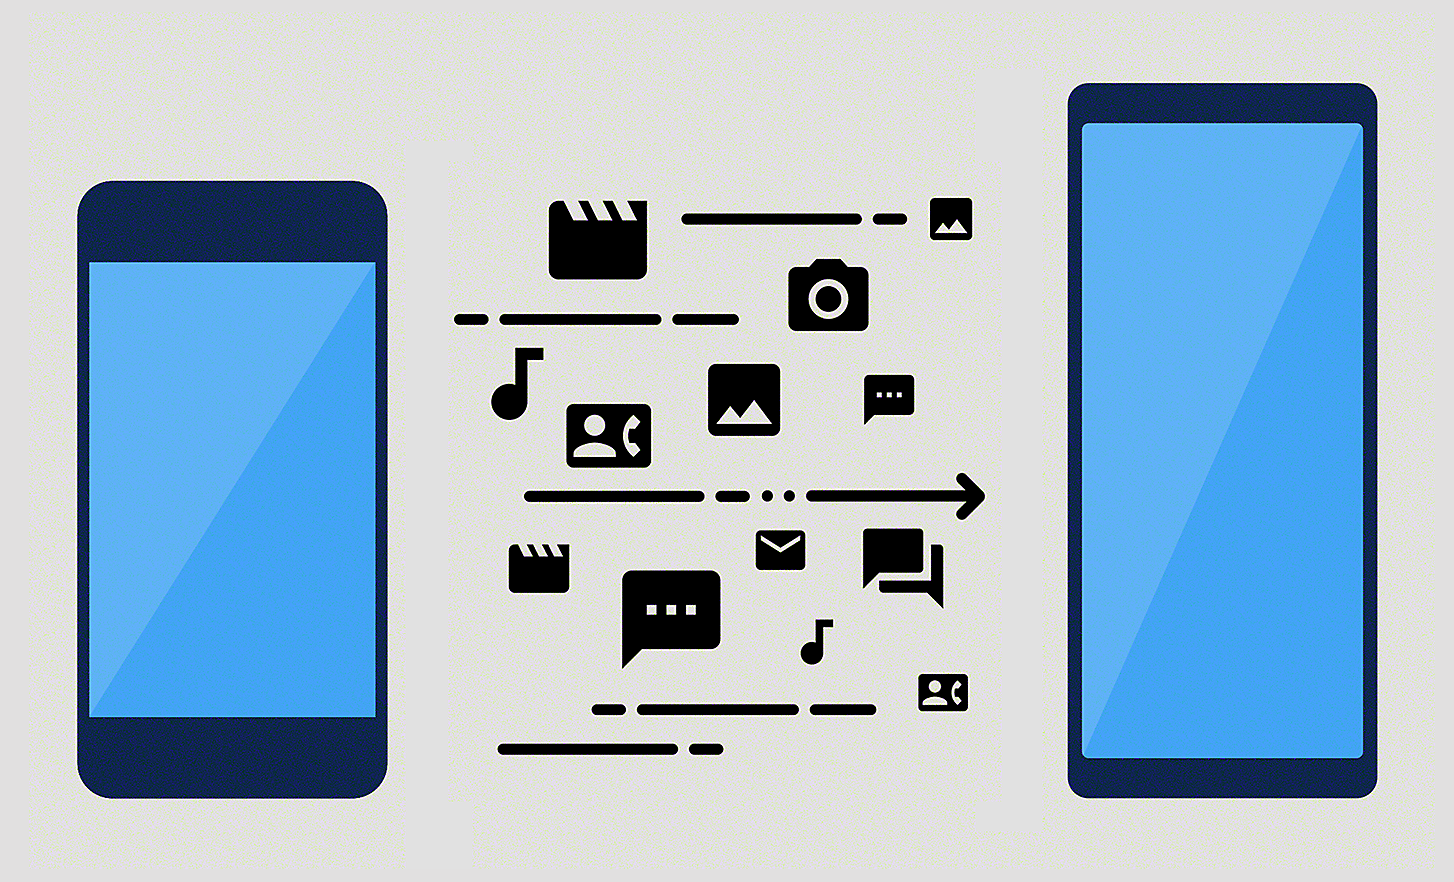 Ilustración que muestra la transferencia de contenido desde un smartphone a otro